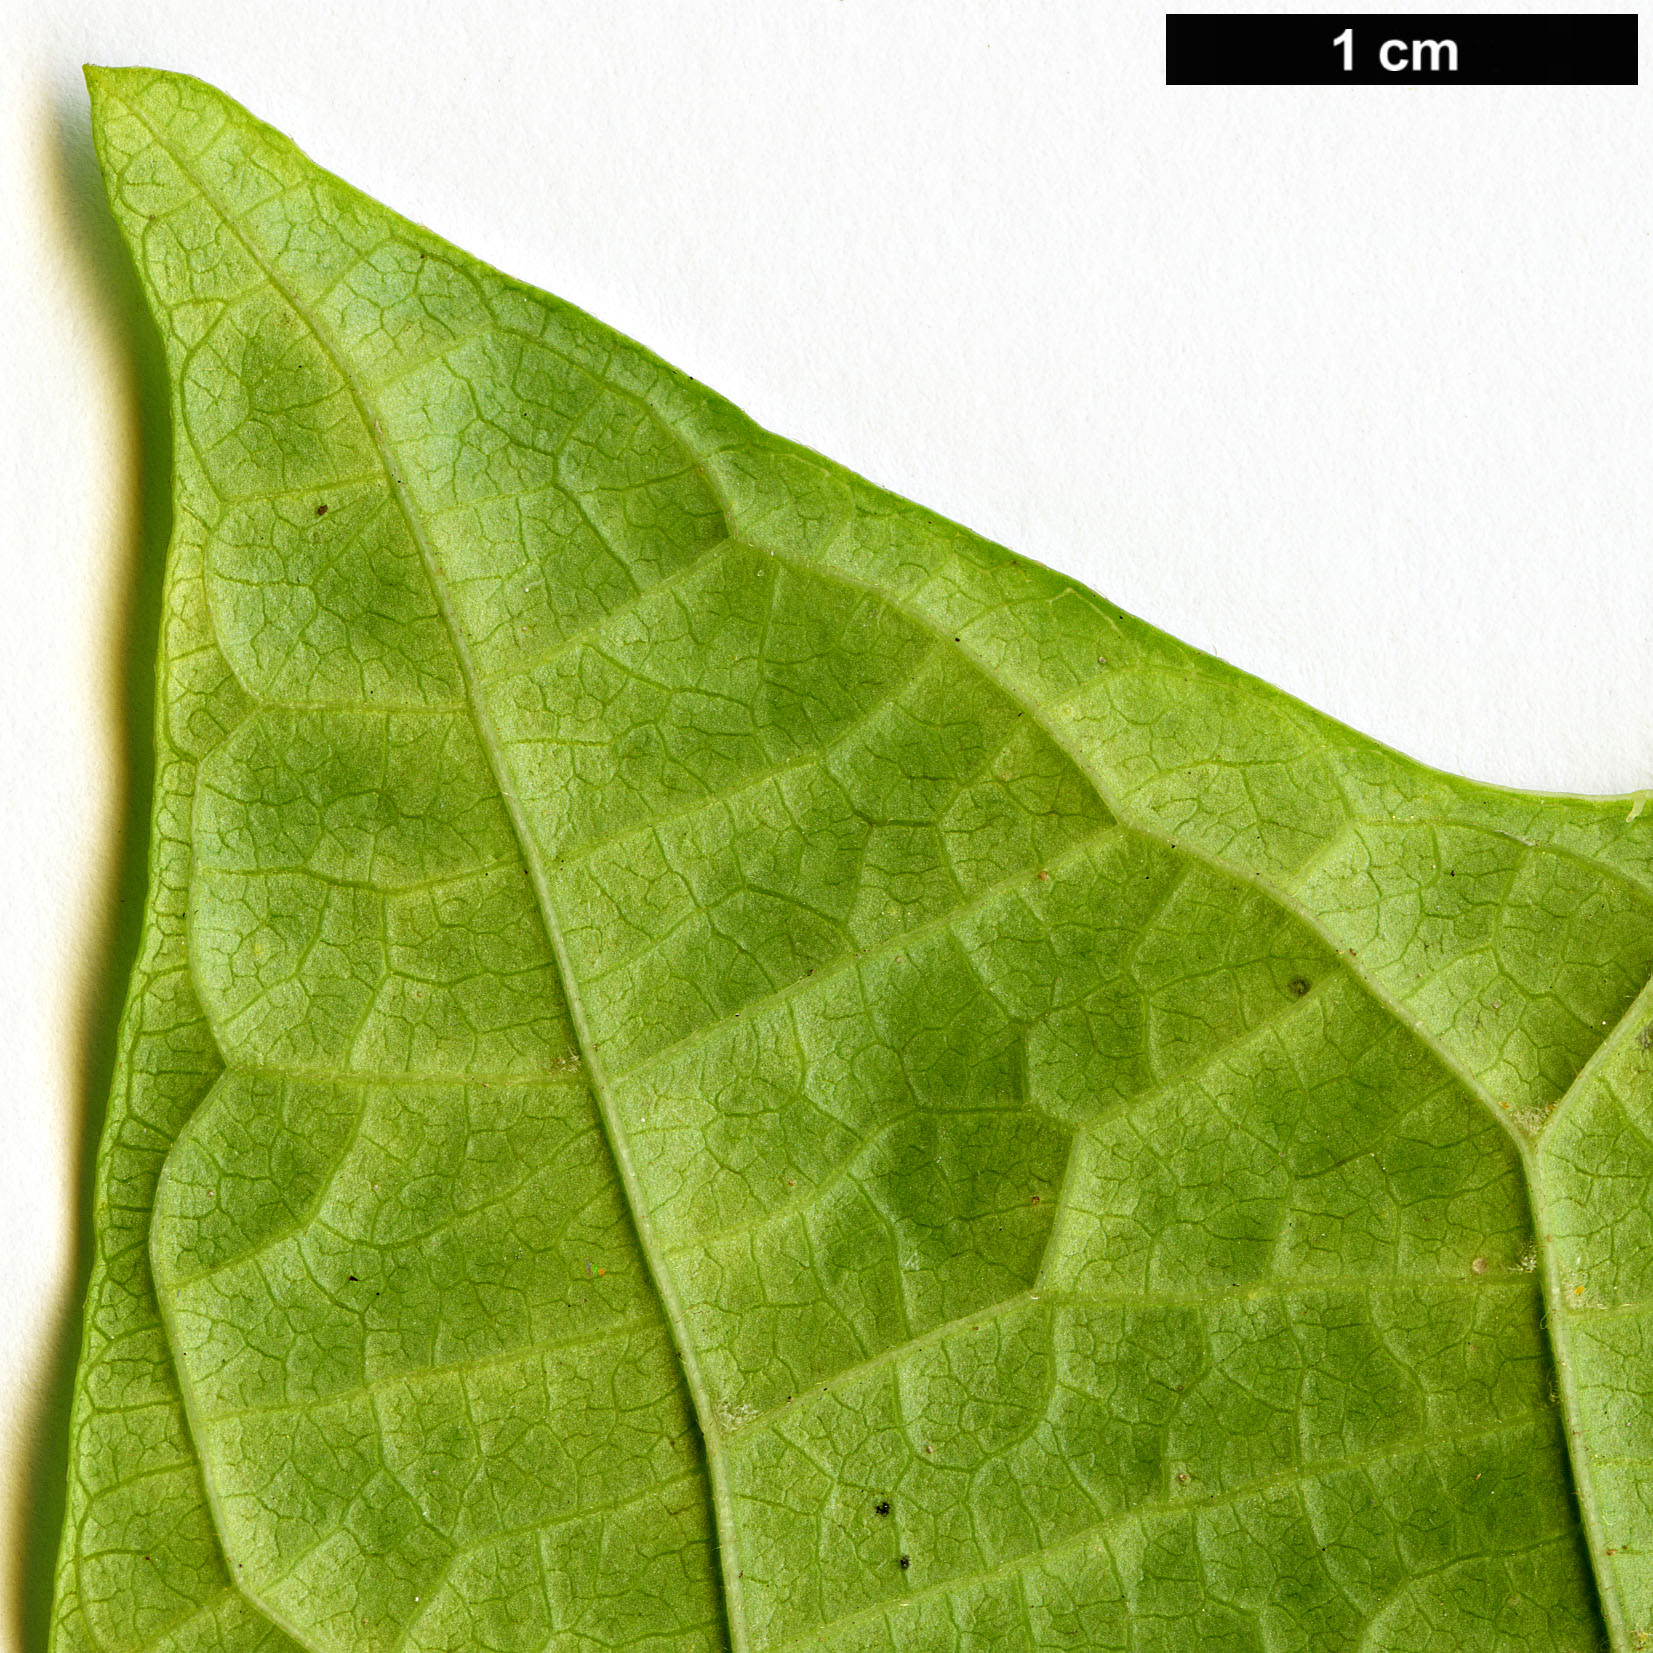 High resolution image: Family: Cornaceae - Genus: Alangium - Taxon: platanifolium